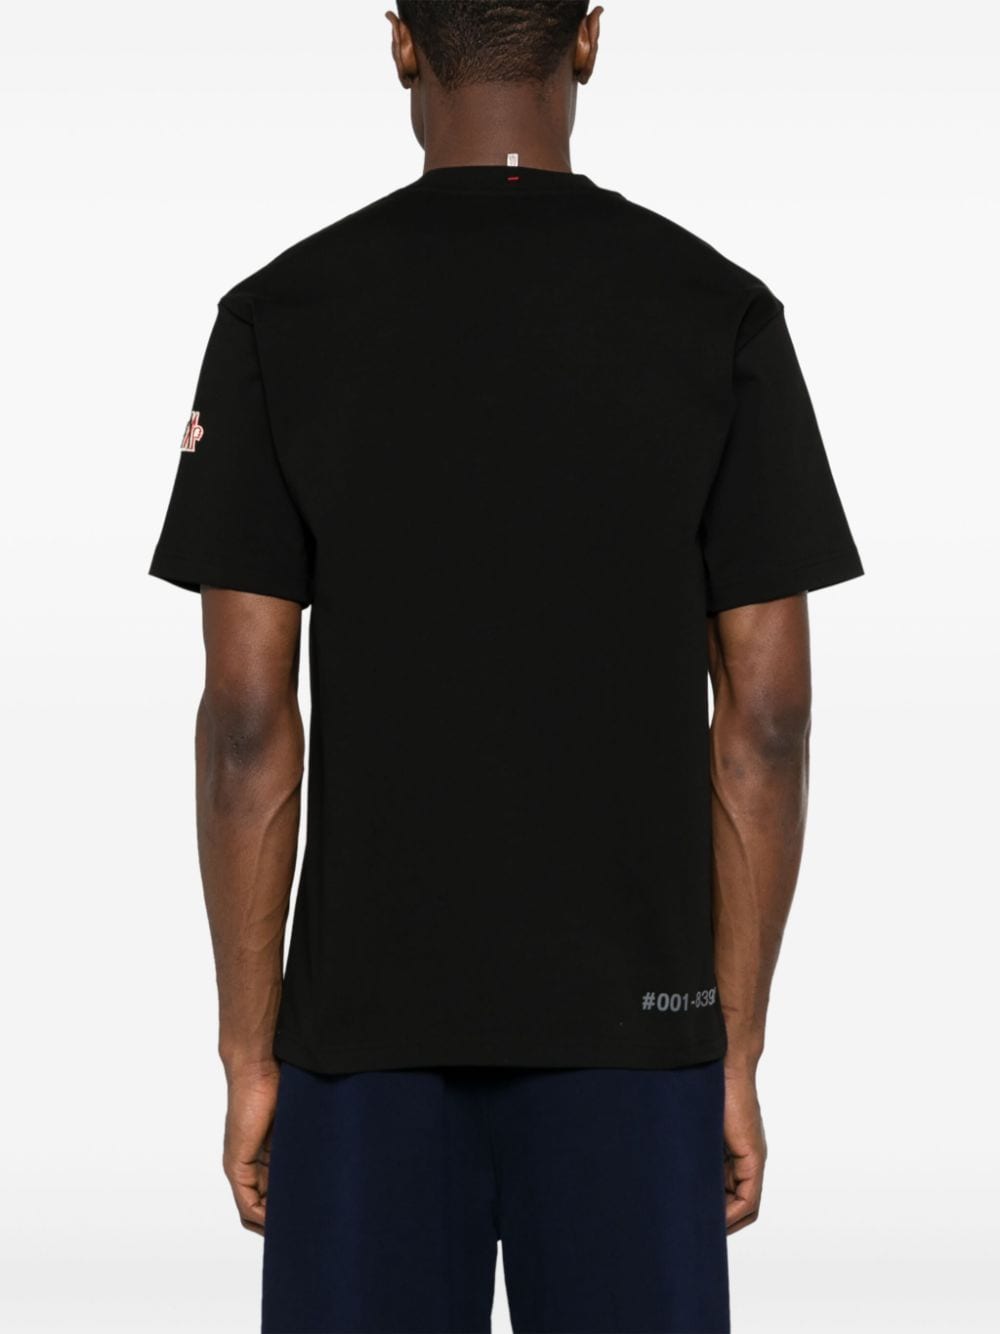 T-shirt in cotone con applicazione logo<br><br><br>